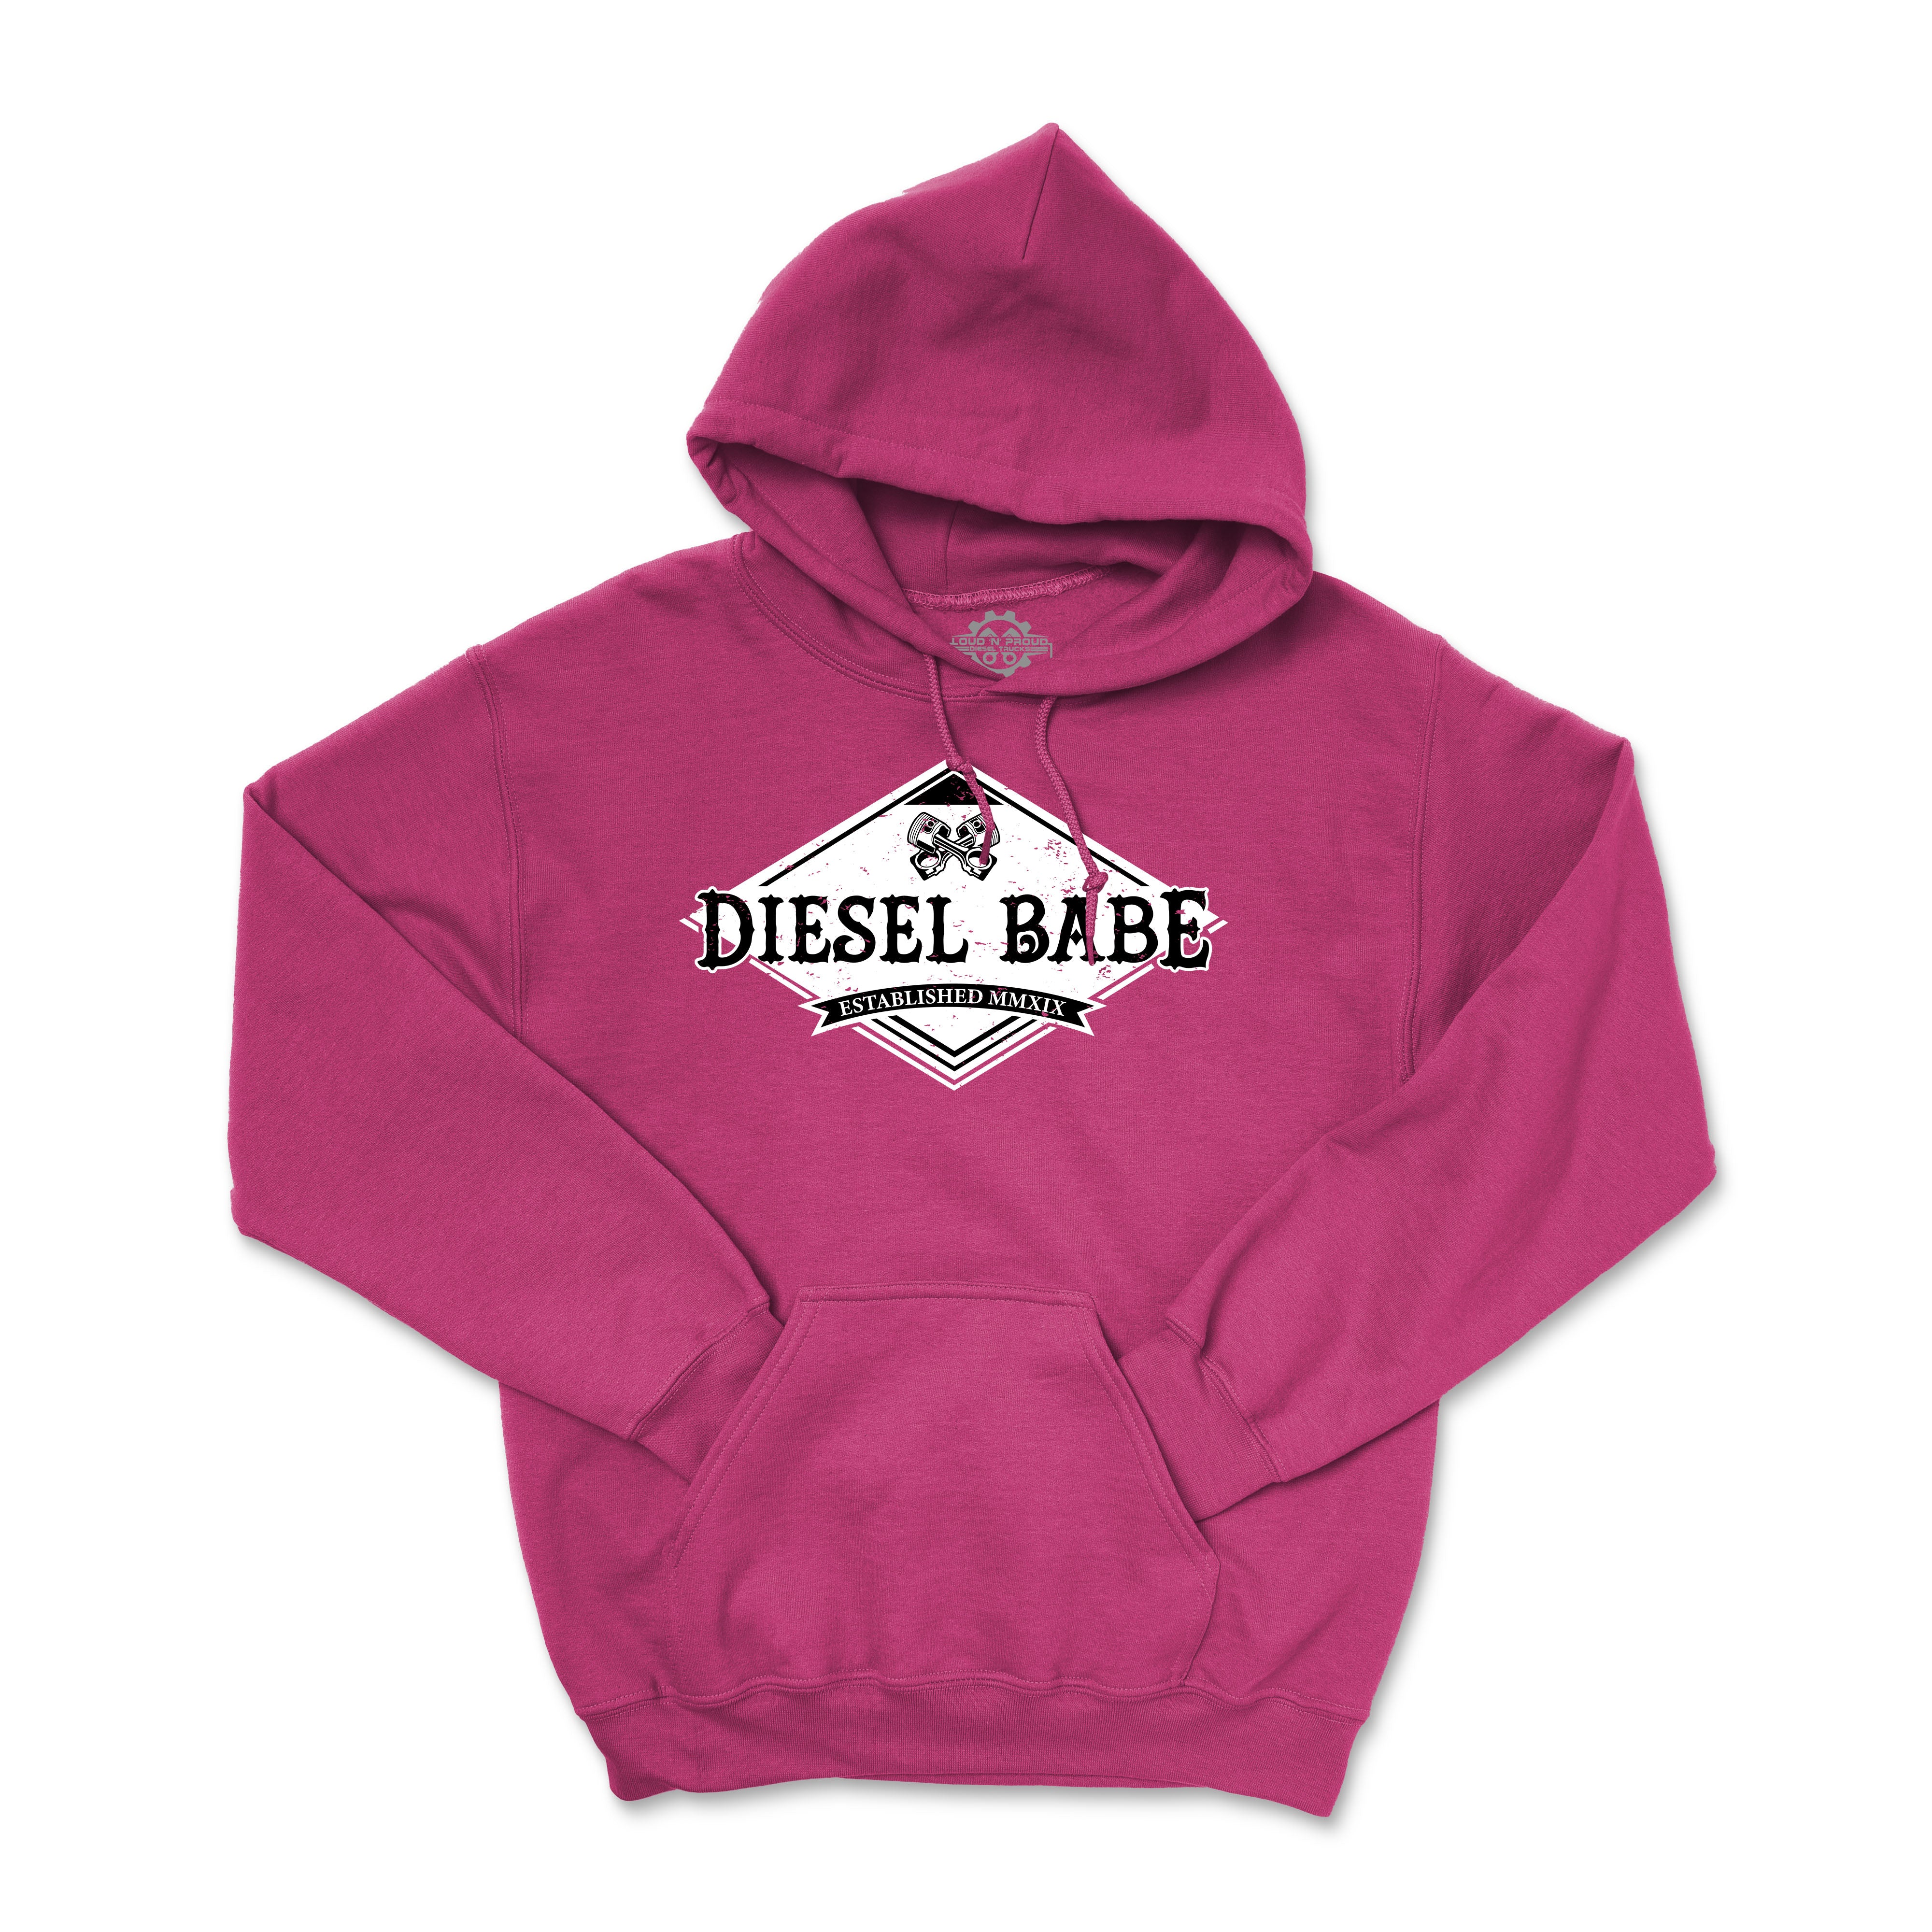 Diesel Babe Rustic - Hoodie